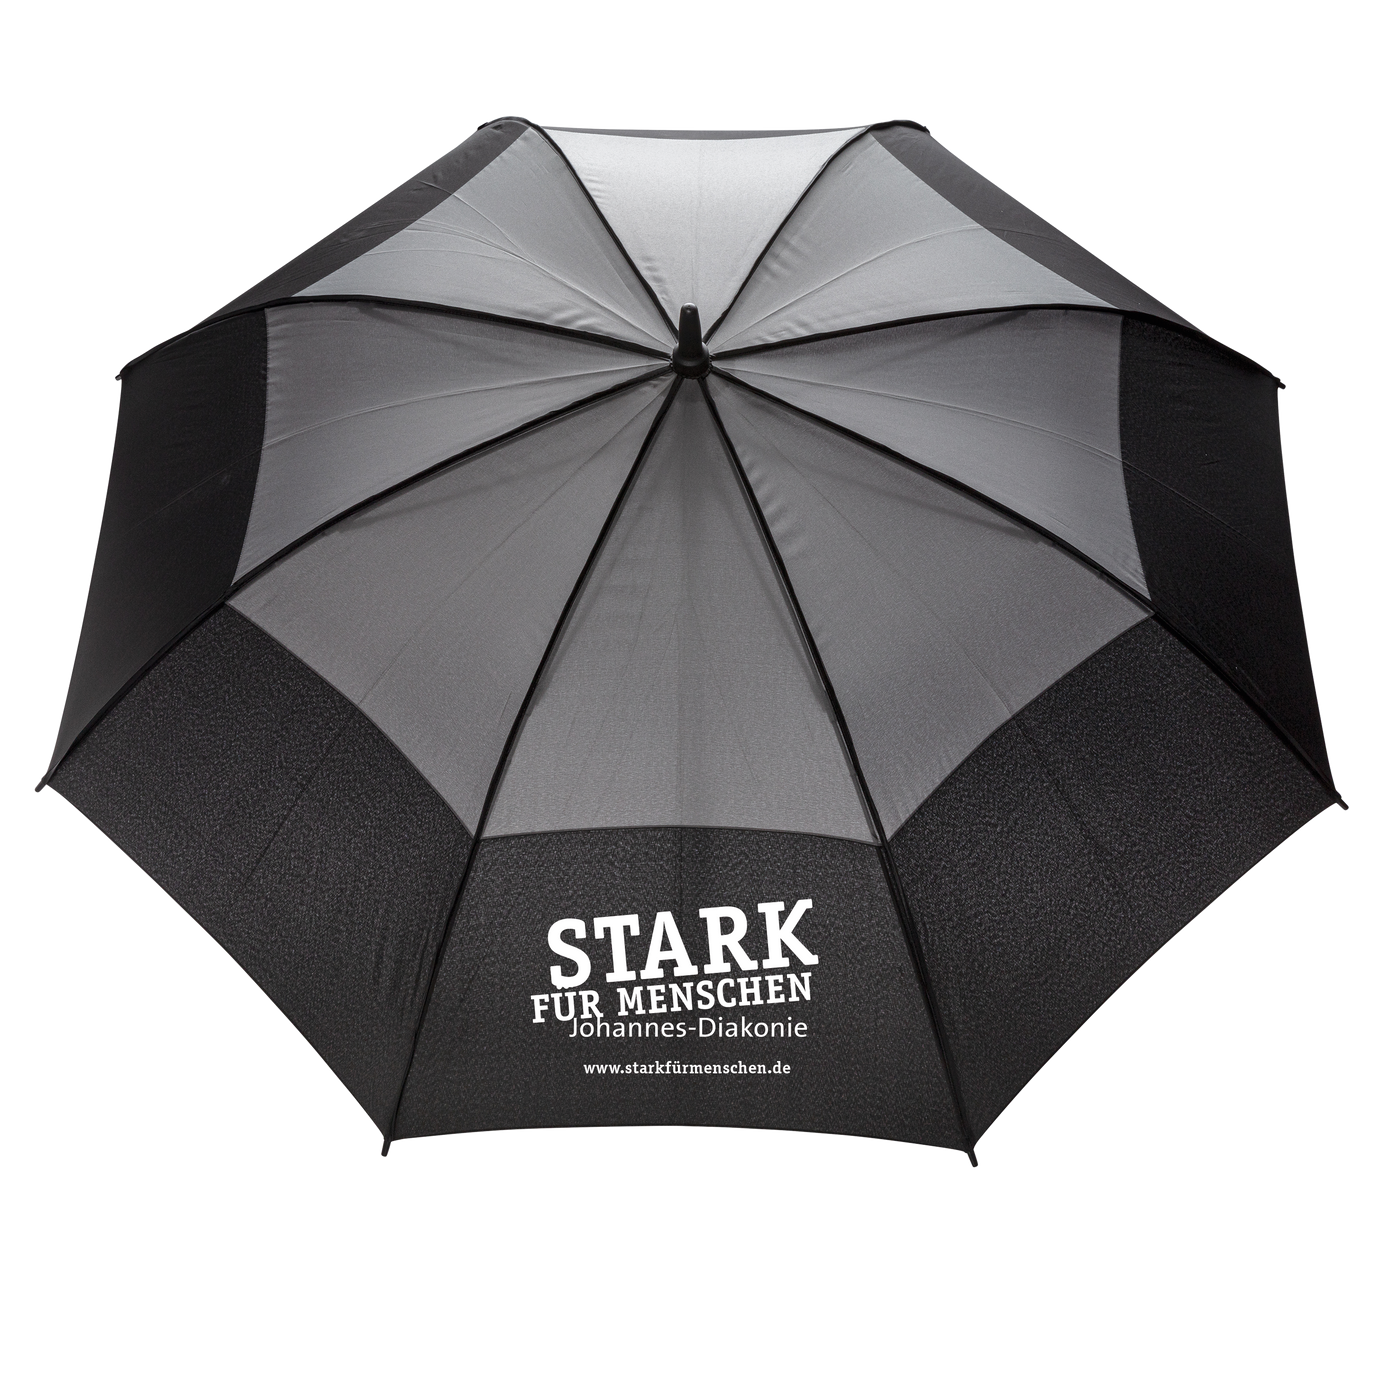 (Grau-schwarzer Regenschirm mit ,,Stark für Menschen" Schriftzug